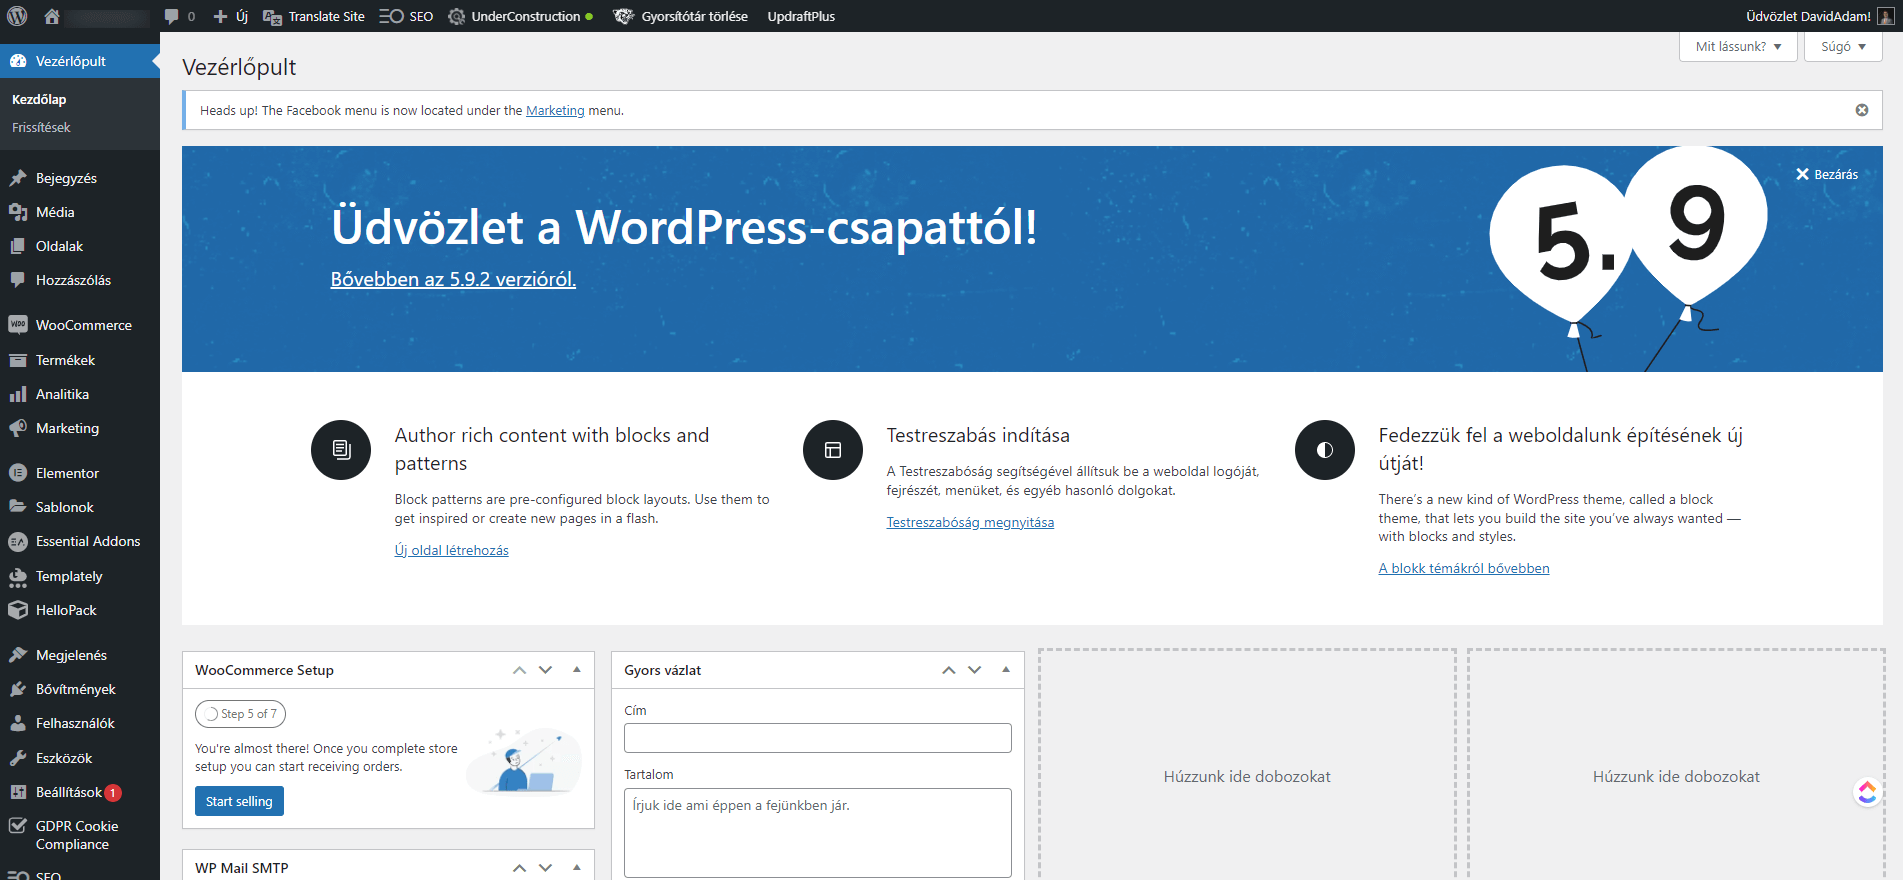 WordPress vezérlőpúlt